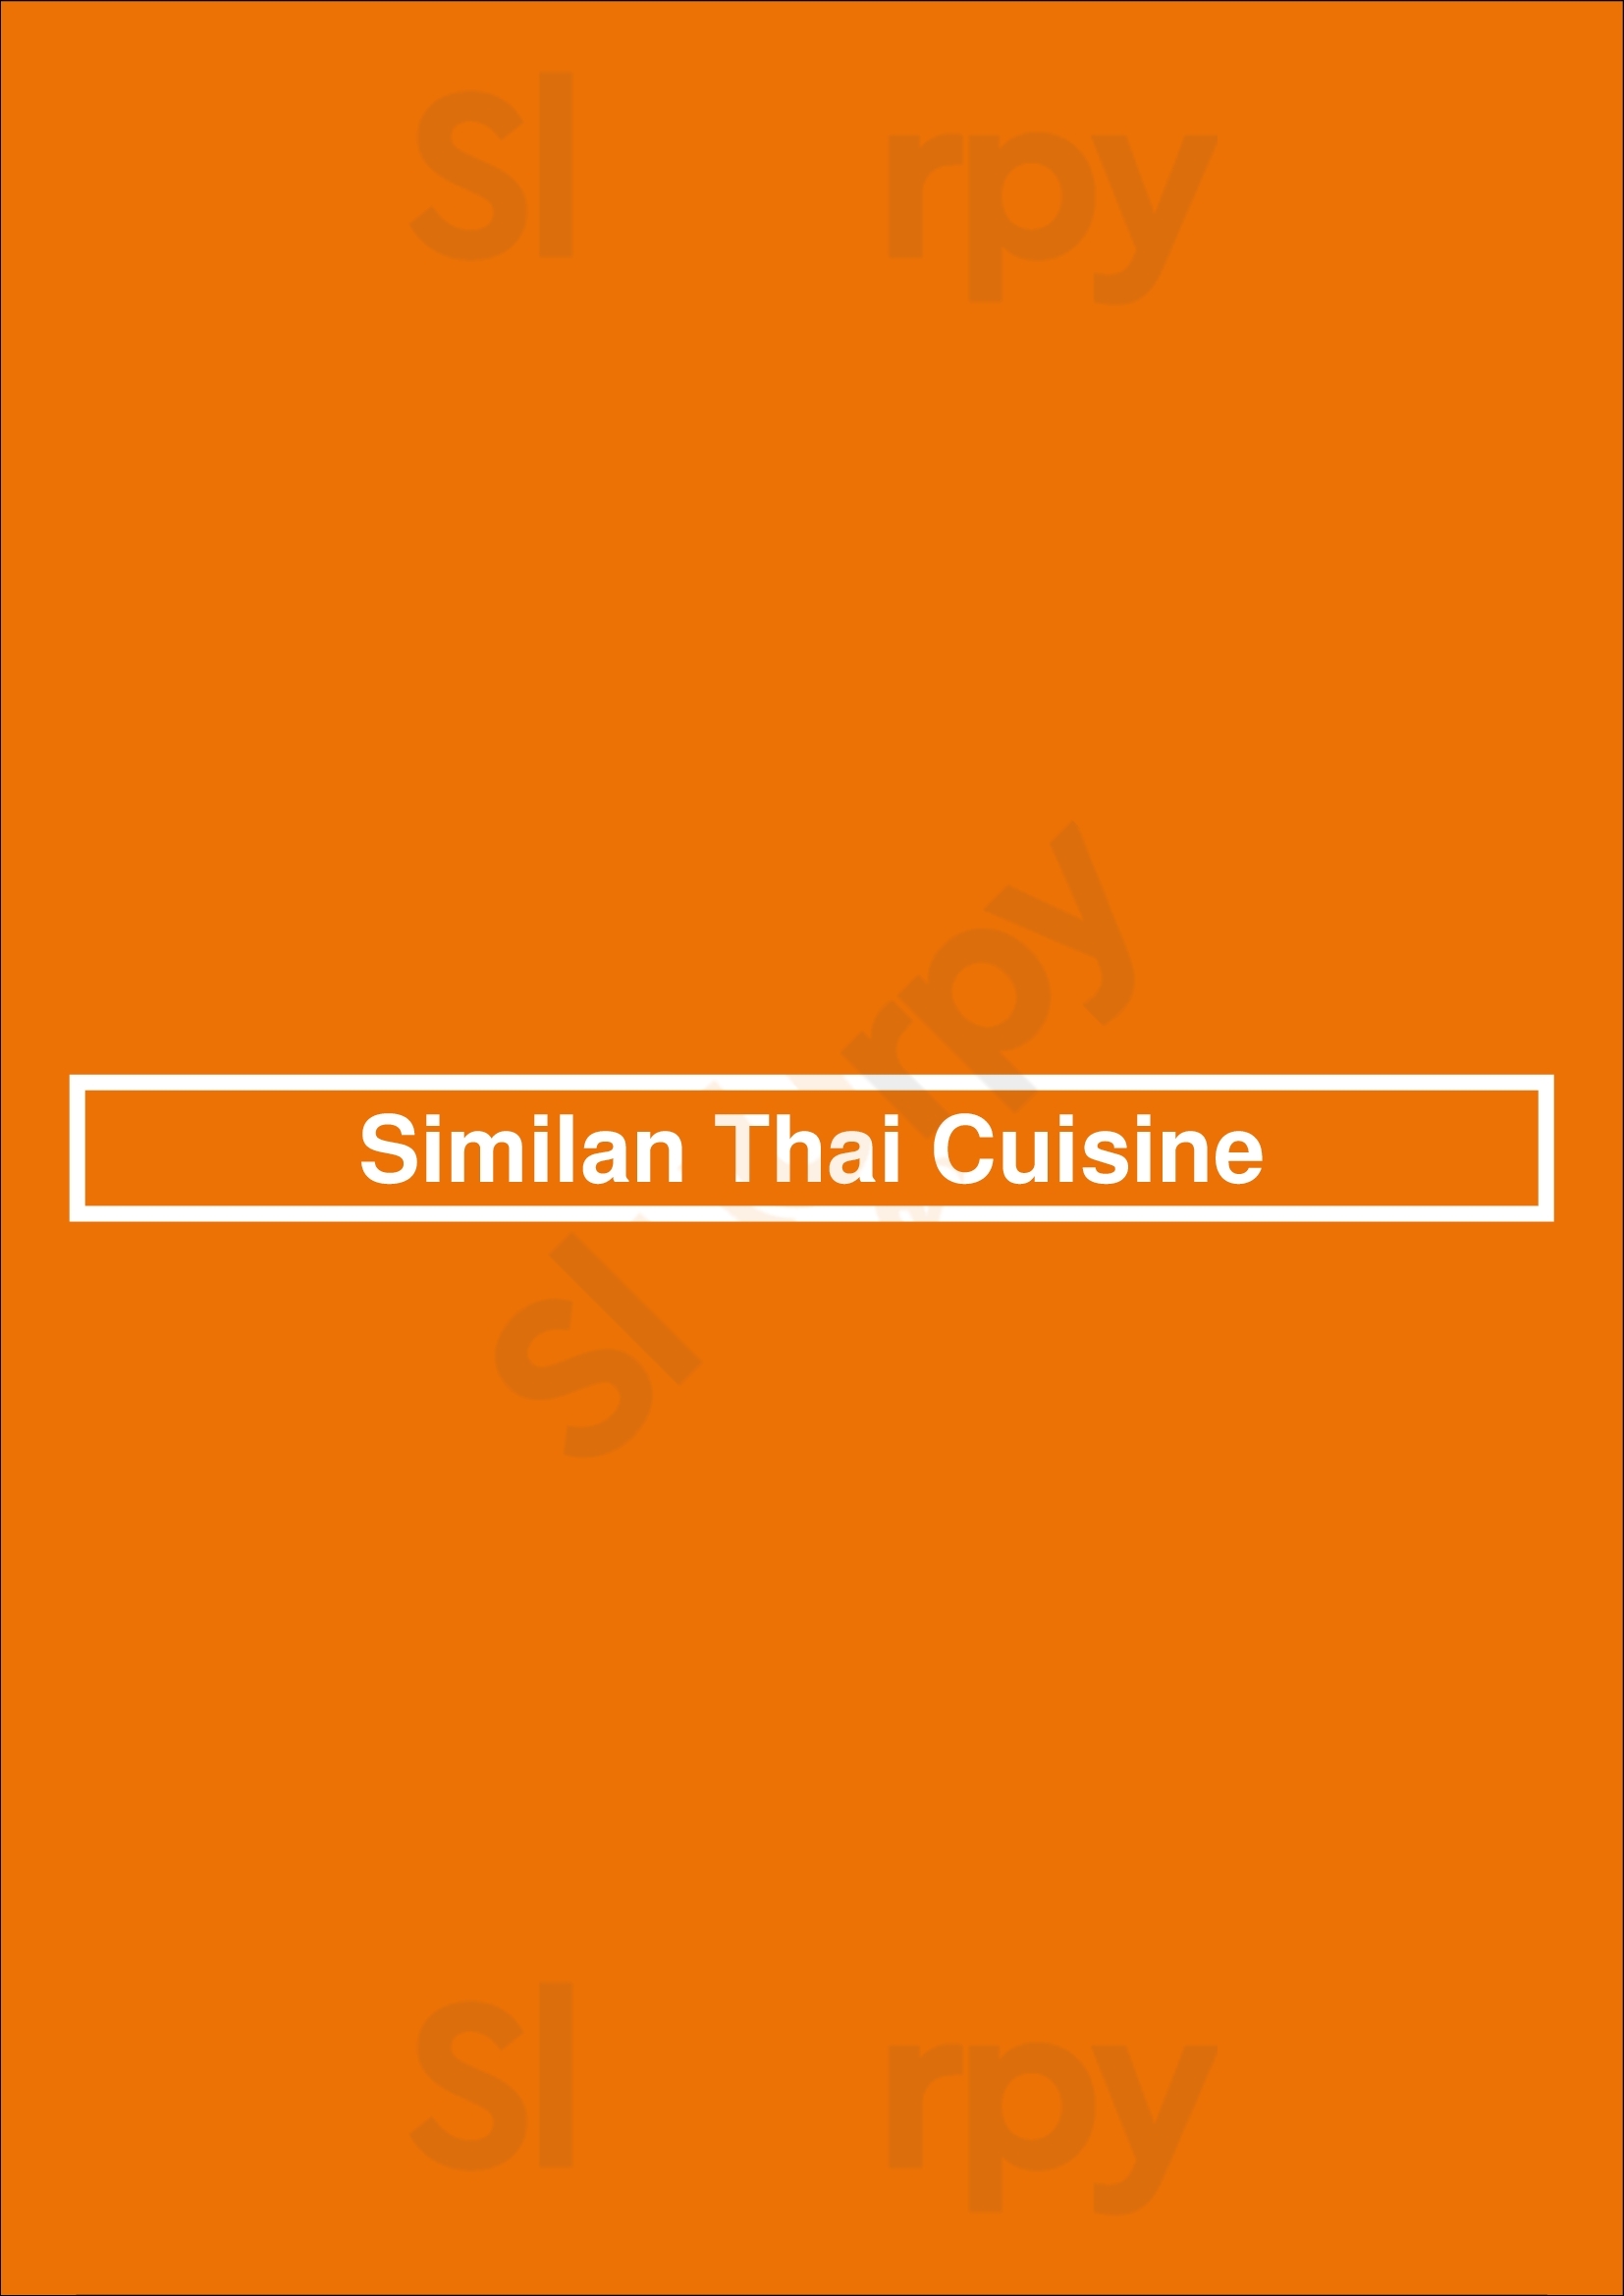 Similan Thai Cuisine Danville Menu - 1